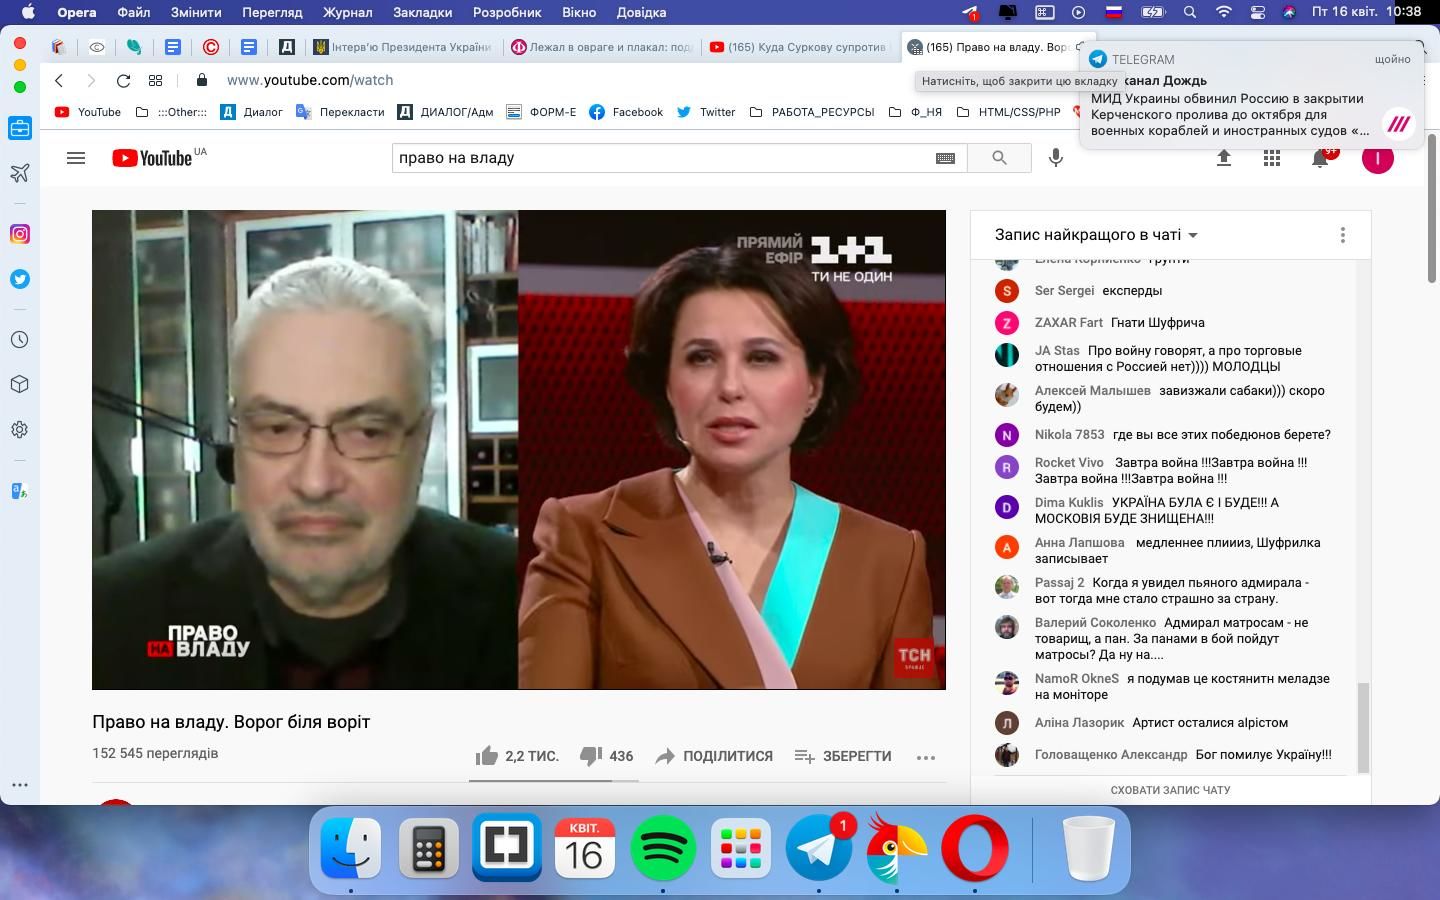 Мосейчук выпустила в эфир эксперта РФ с рассказами о разгроме ВСУ - в Сети возмущены